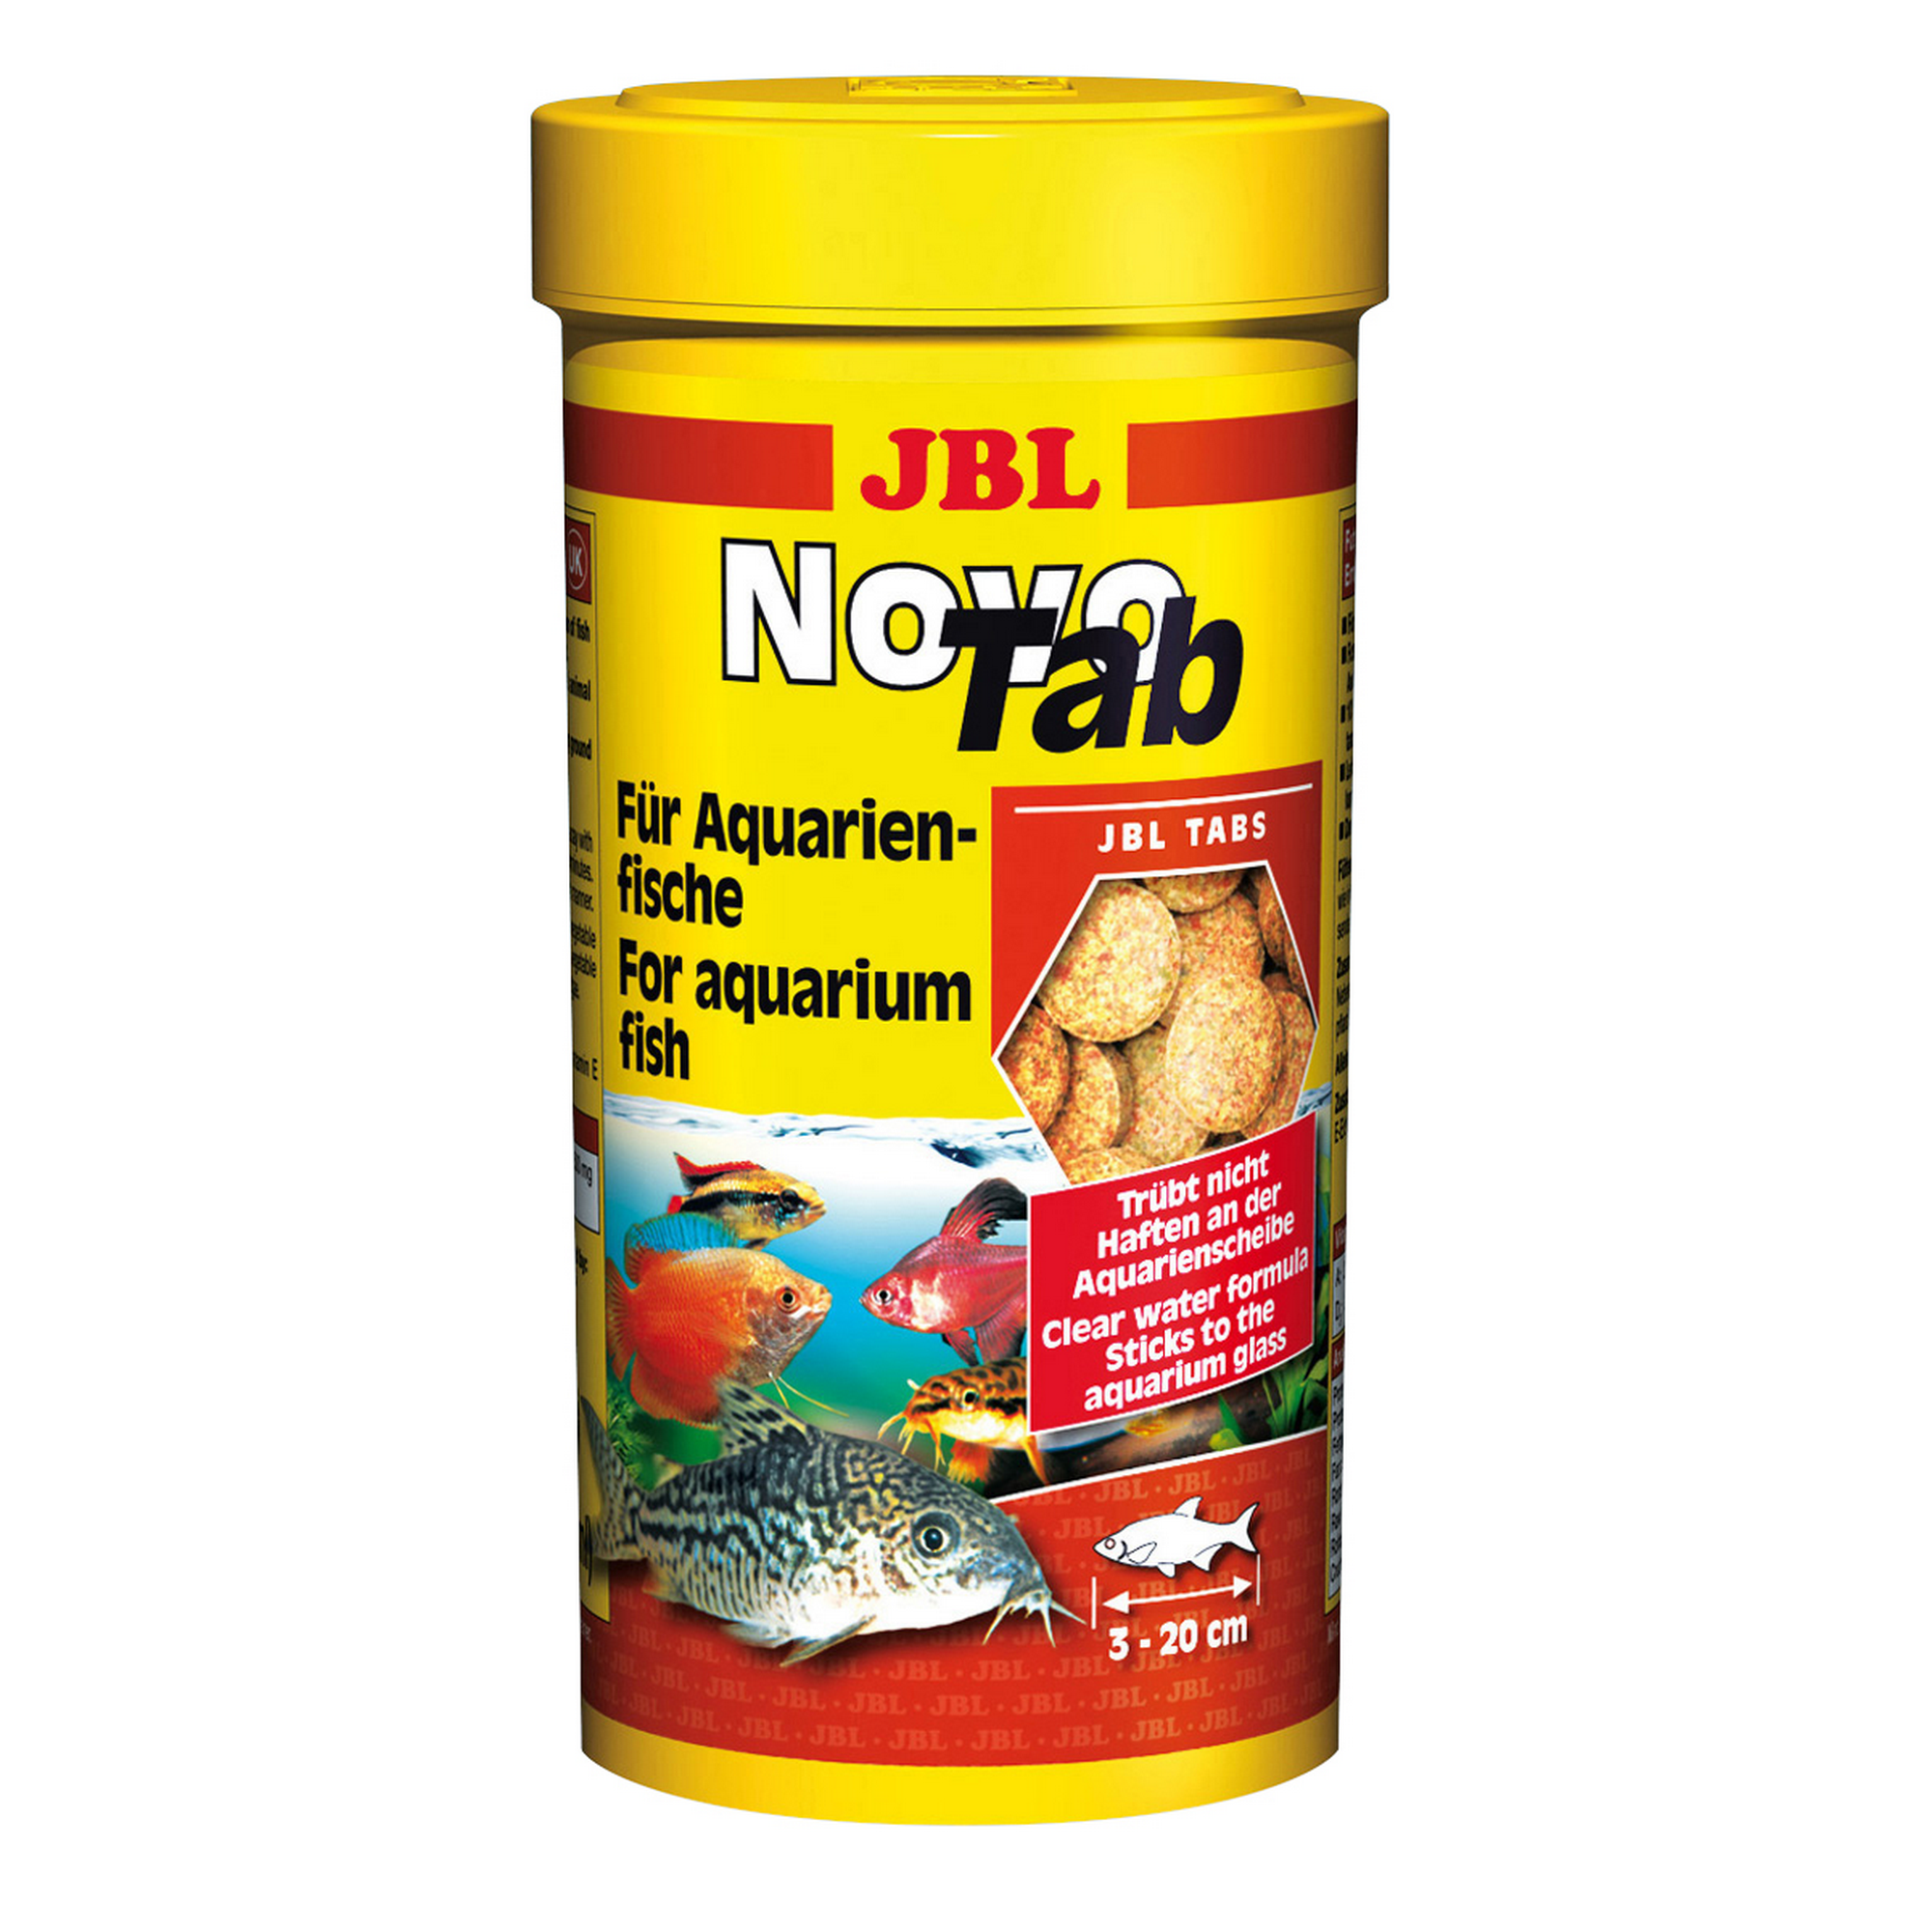 Novo Tab Für Aquarienfische 250 ml + product picture